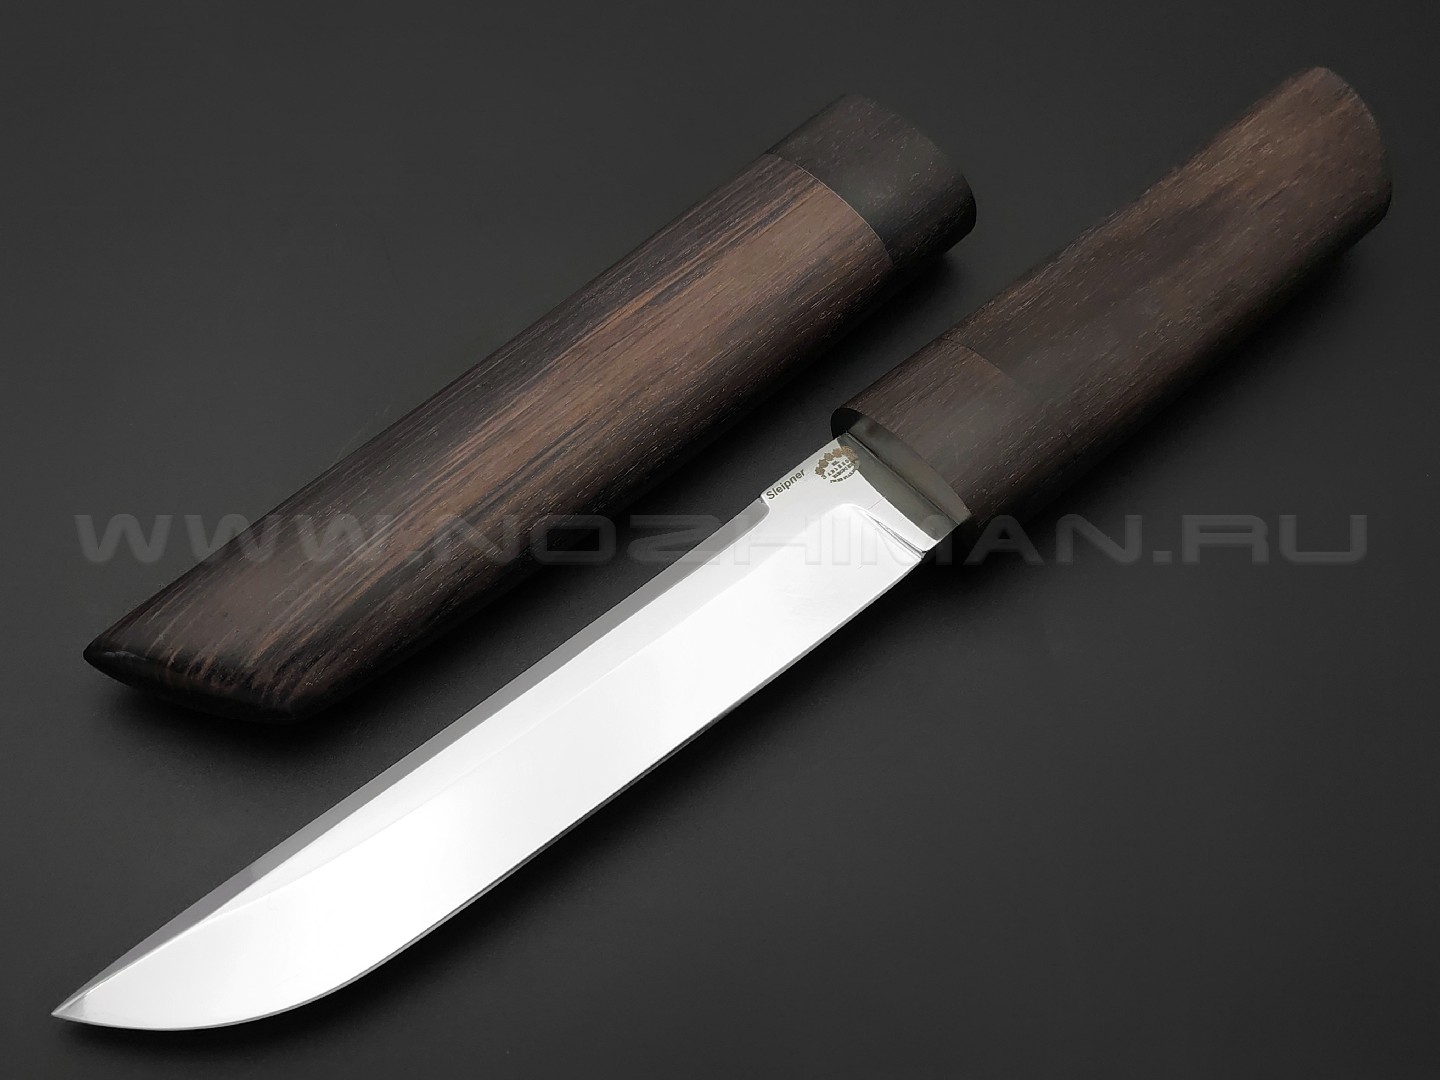 Товарищество Завьялова нож Танто сталь Sleipner, рукоять Дерево граб, деревянные ножны